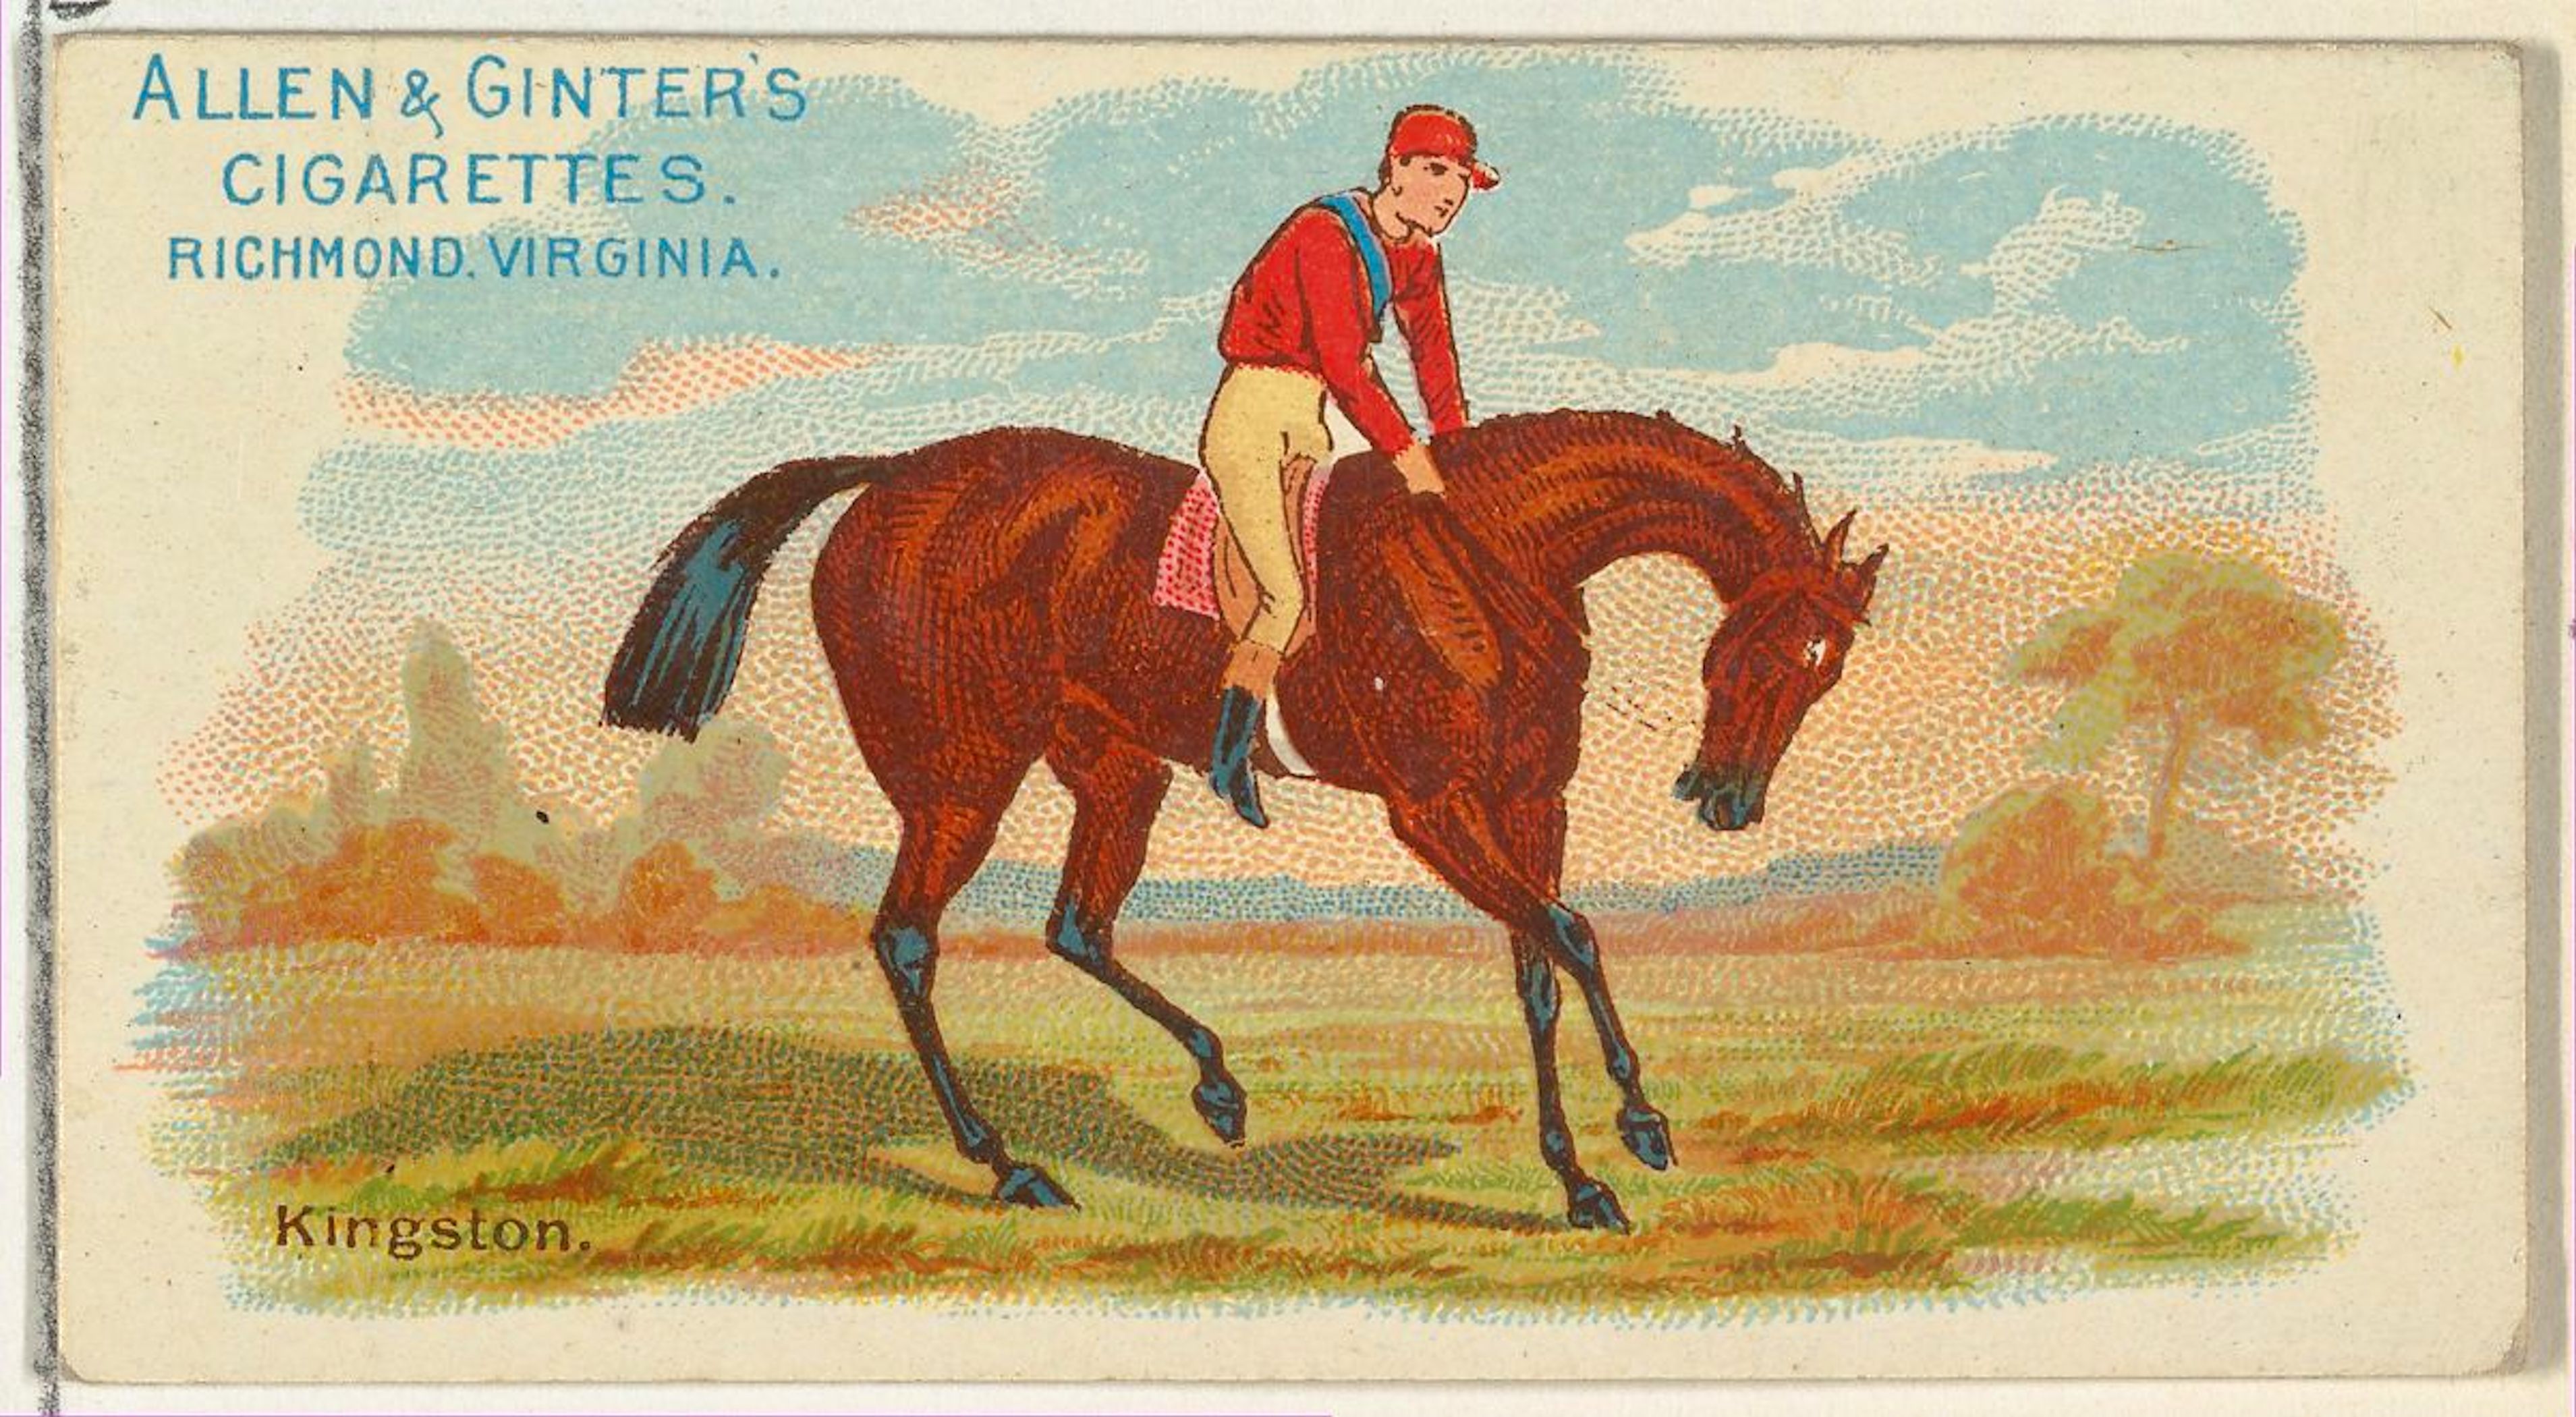 Kingston, from an 1888 Allen & Ginter card